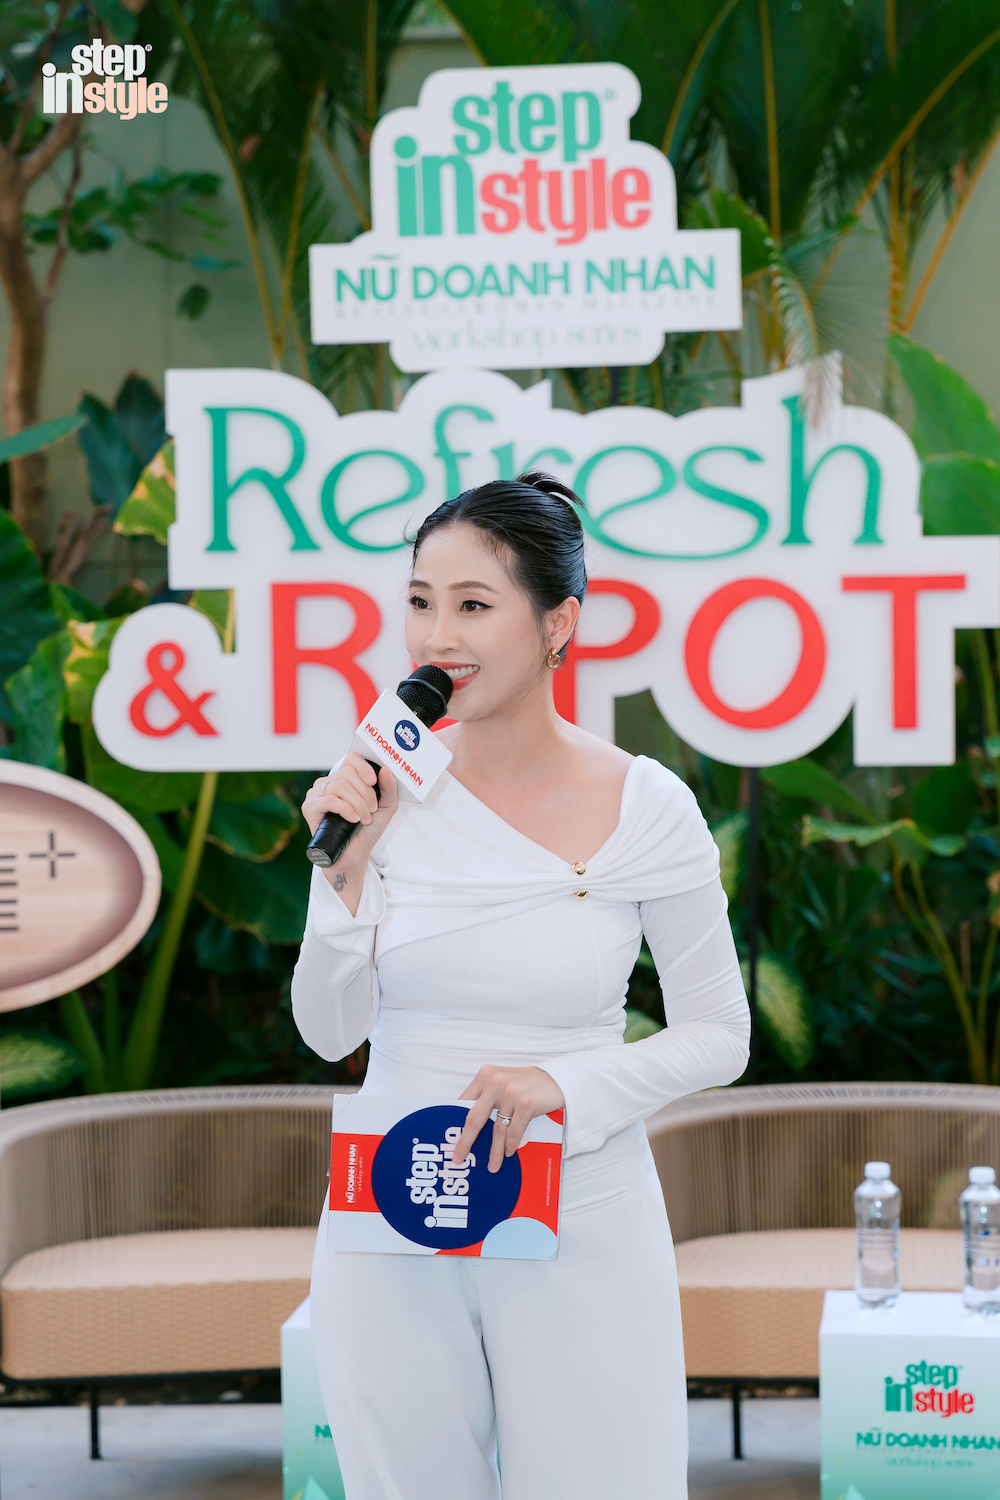 Host Liêu Hà Trinh dẫn dắt câu chuyện mở đầu minitalk Refresh & Repot